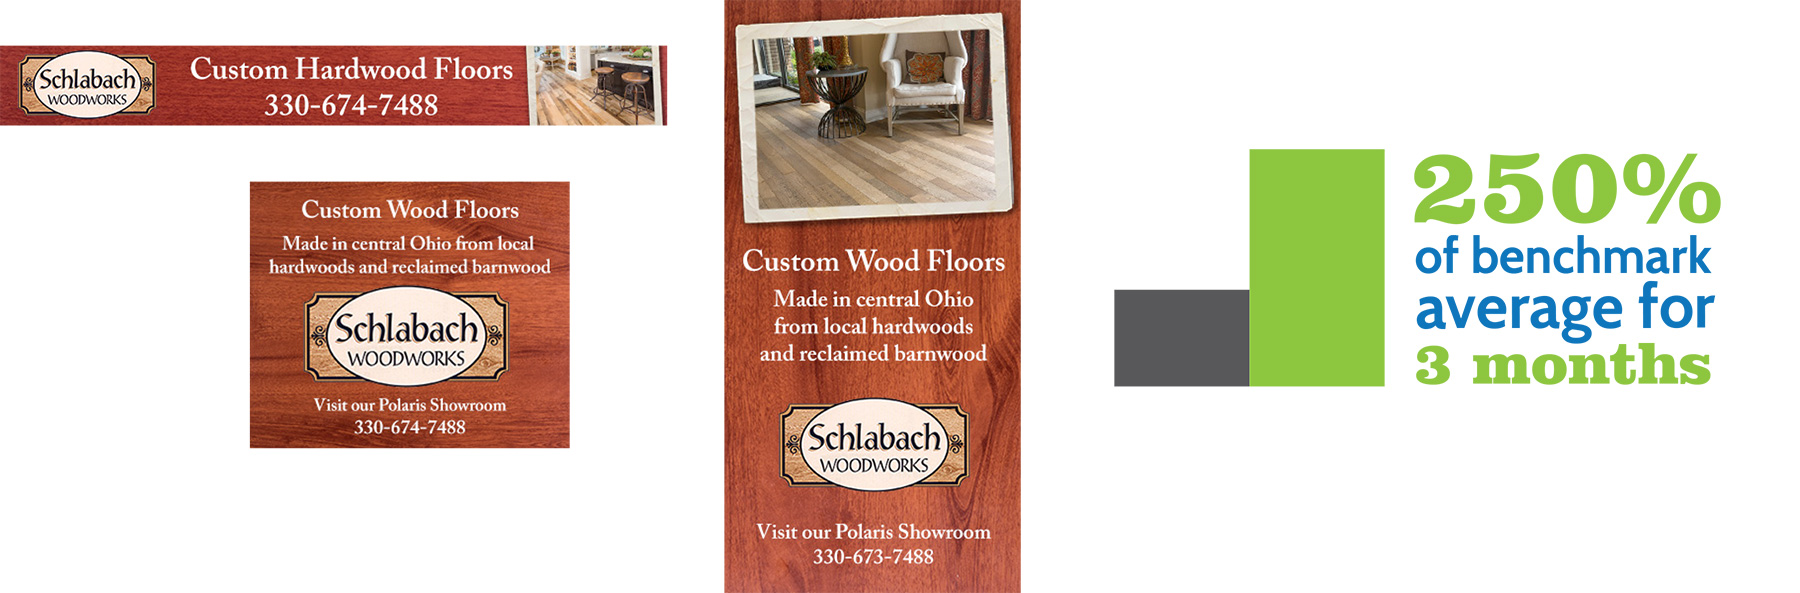 Schlabach Woodworks digital ads